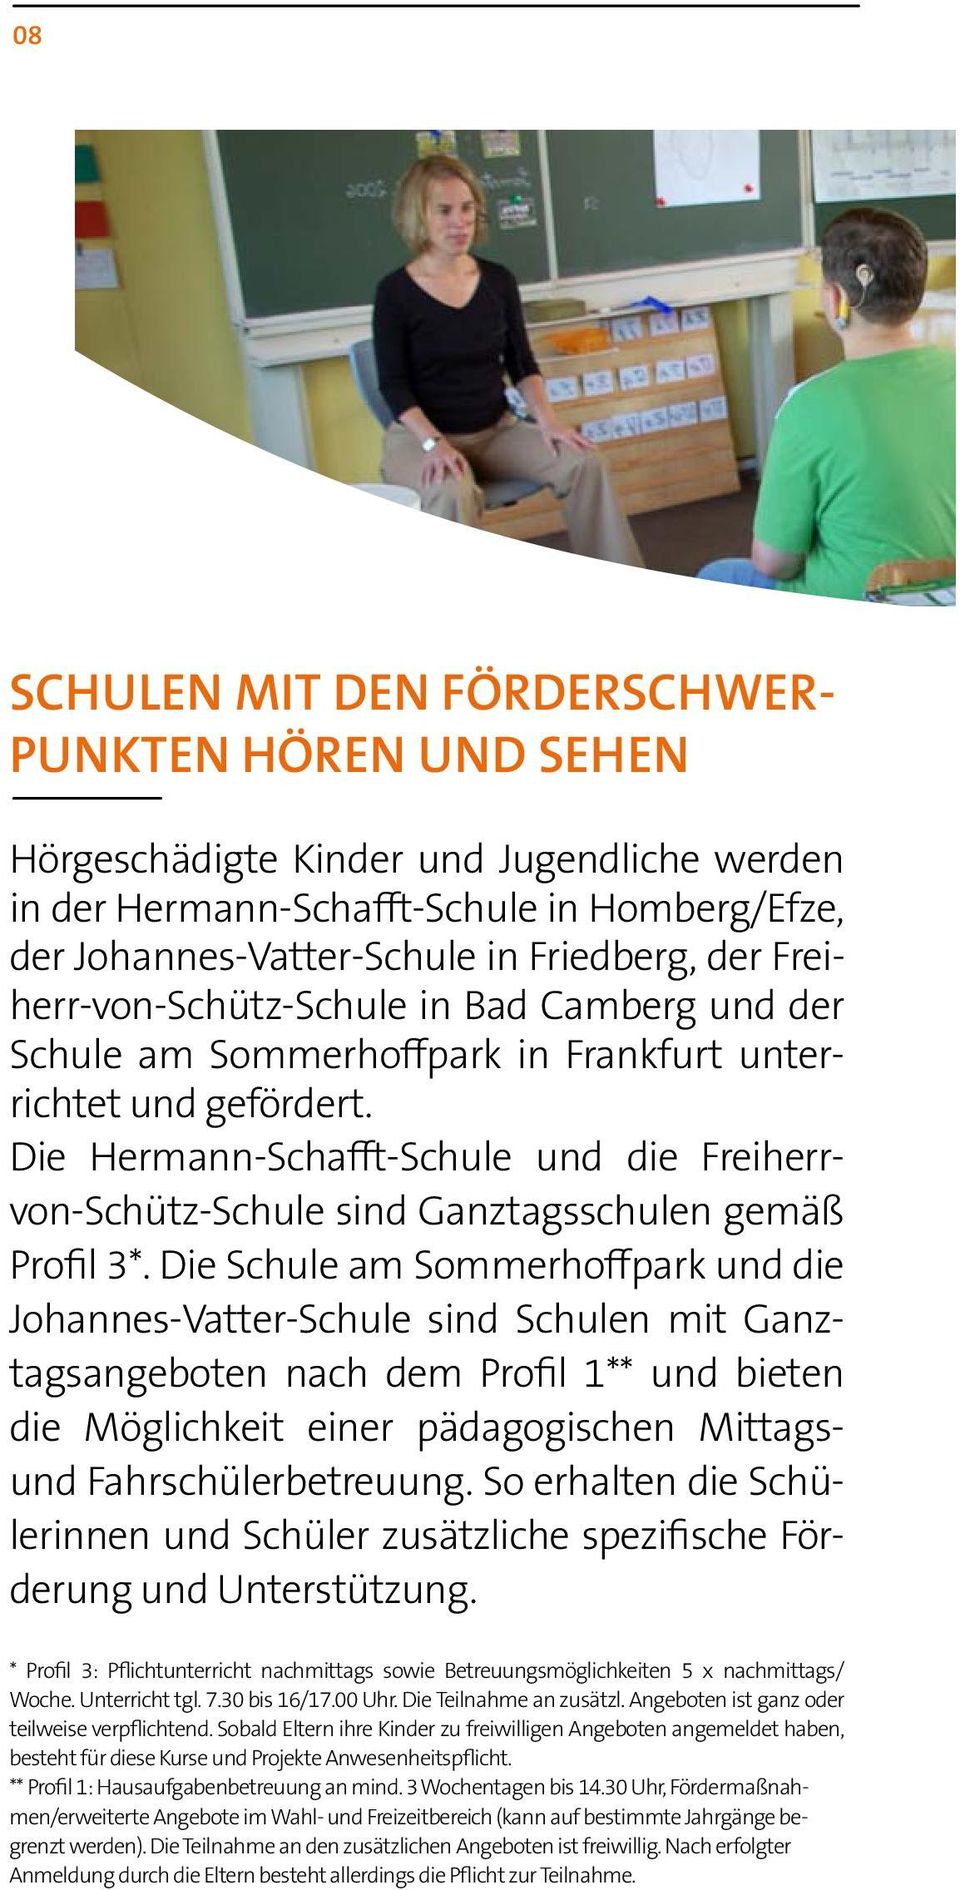 Die Hermann-Schafft-Schule und die Freiherrvon-Schütz-Schule sind Ganztagsschulen gemäß Profil 3*.